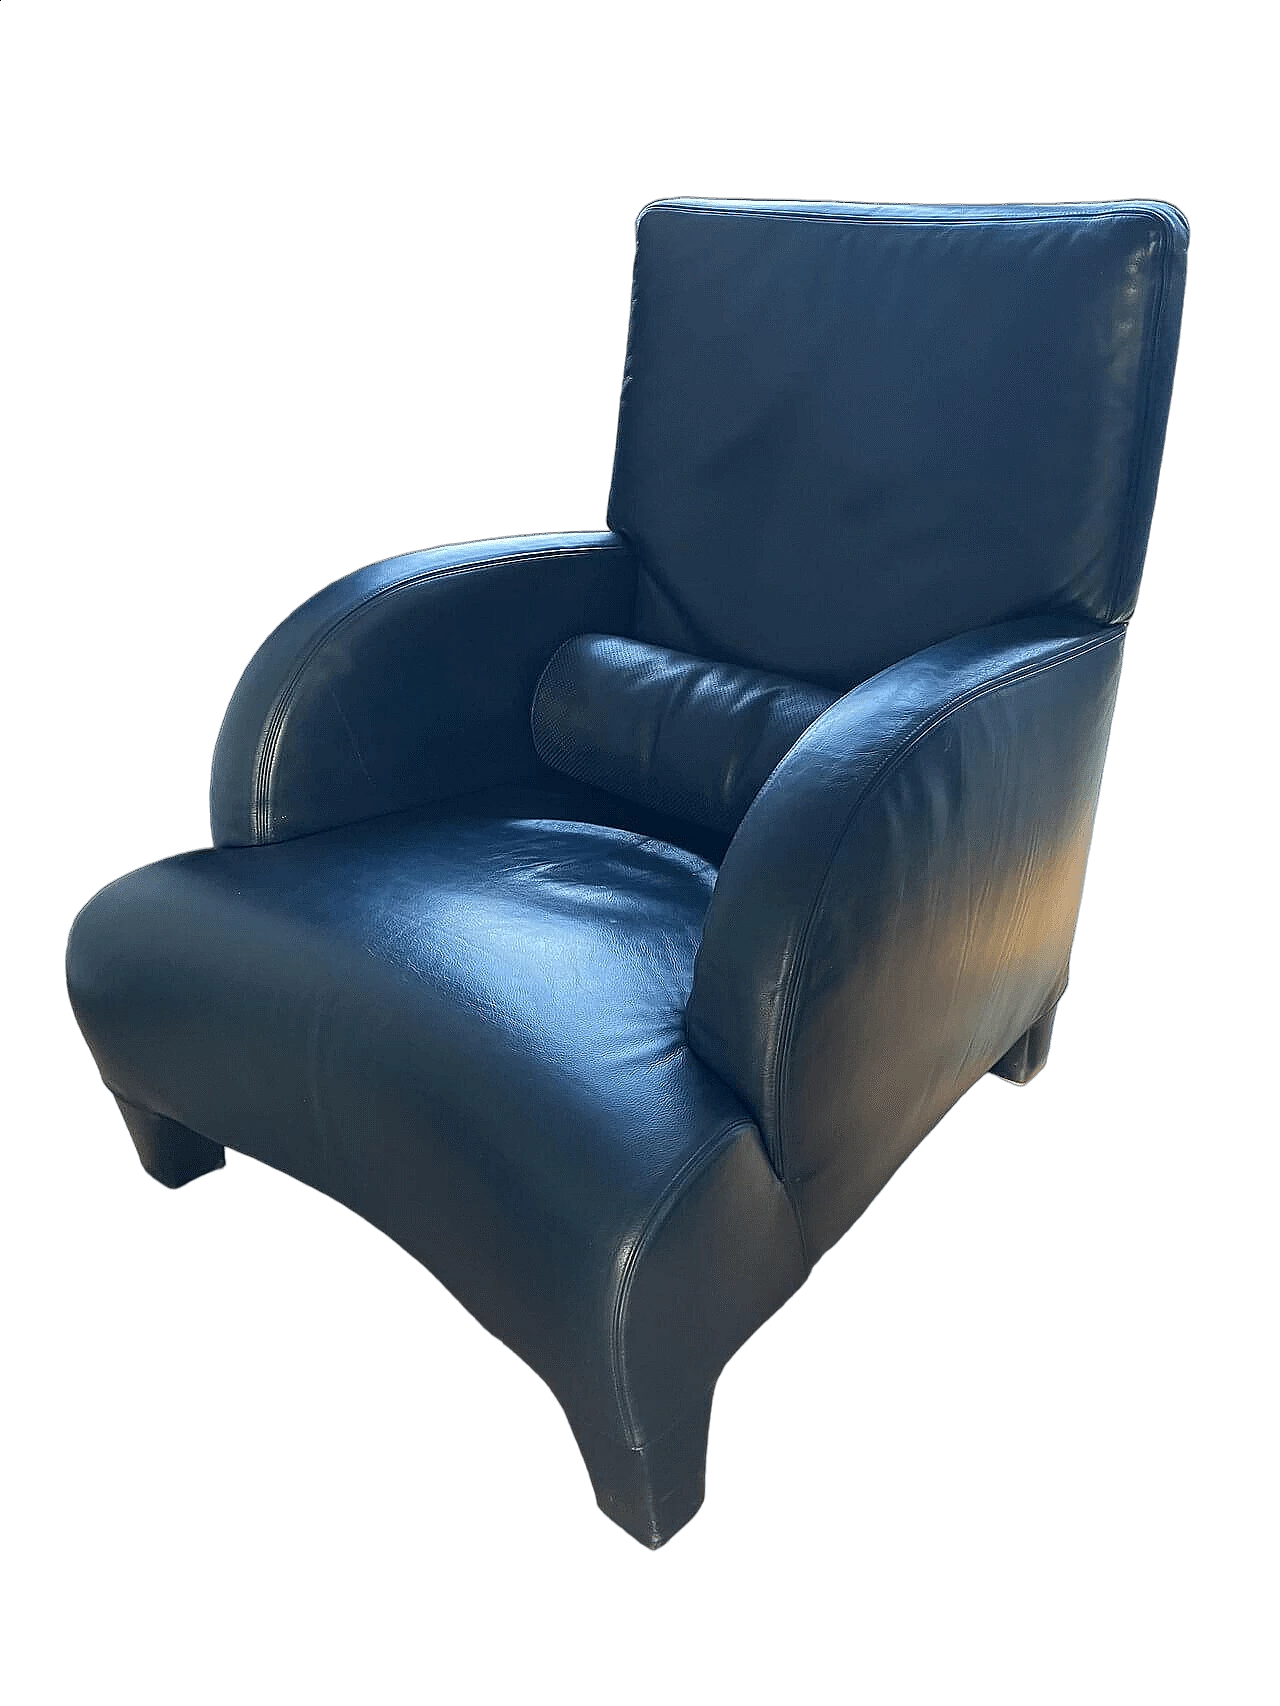 Oriente armchair in dark blue Maxalto leather by Antonio Citterio for B&B Italia 10